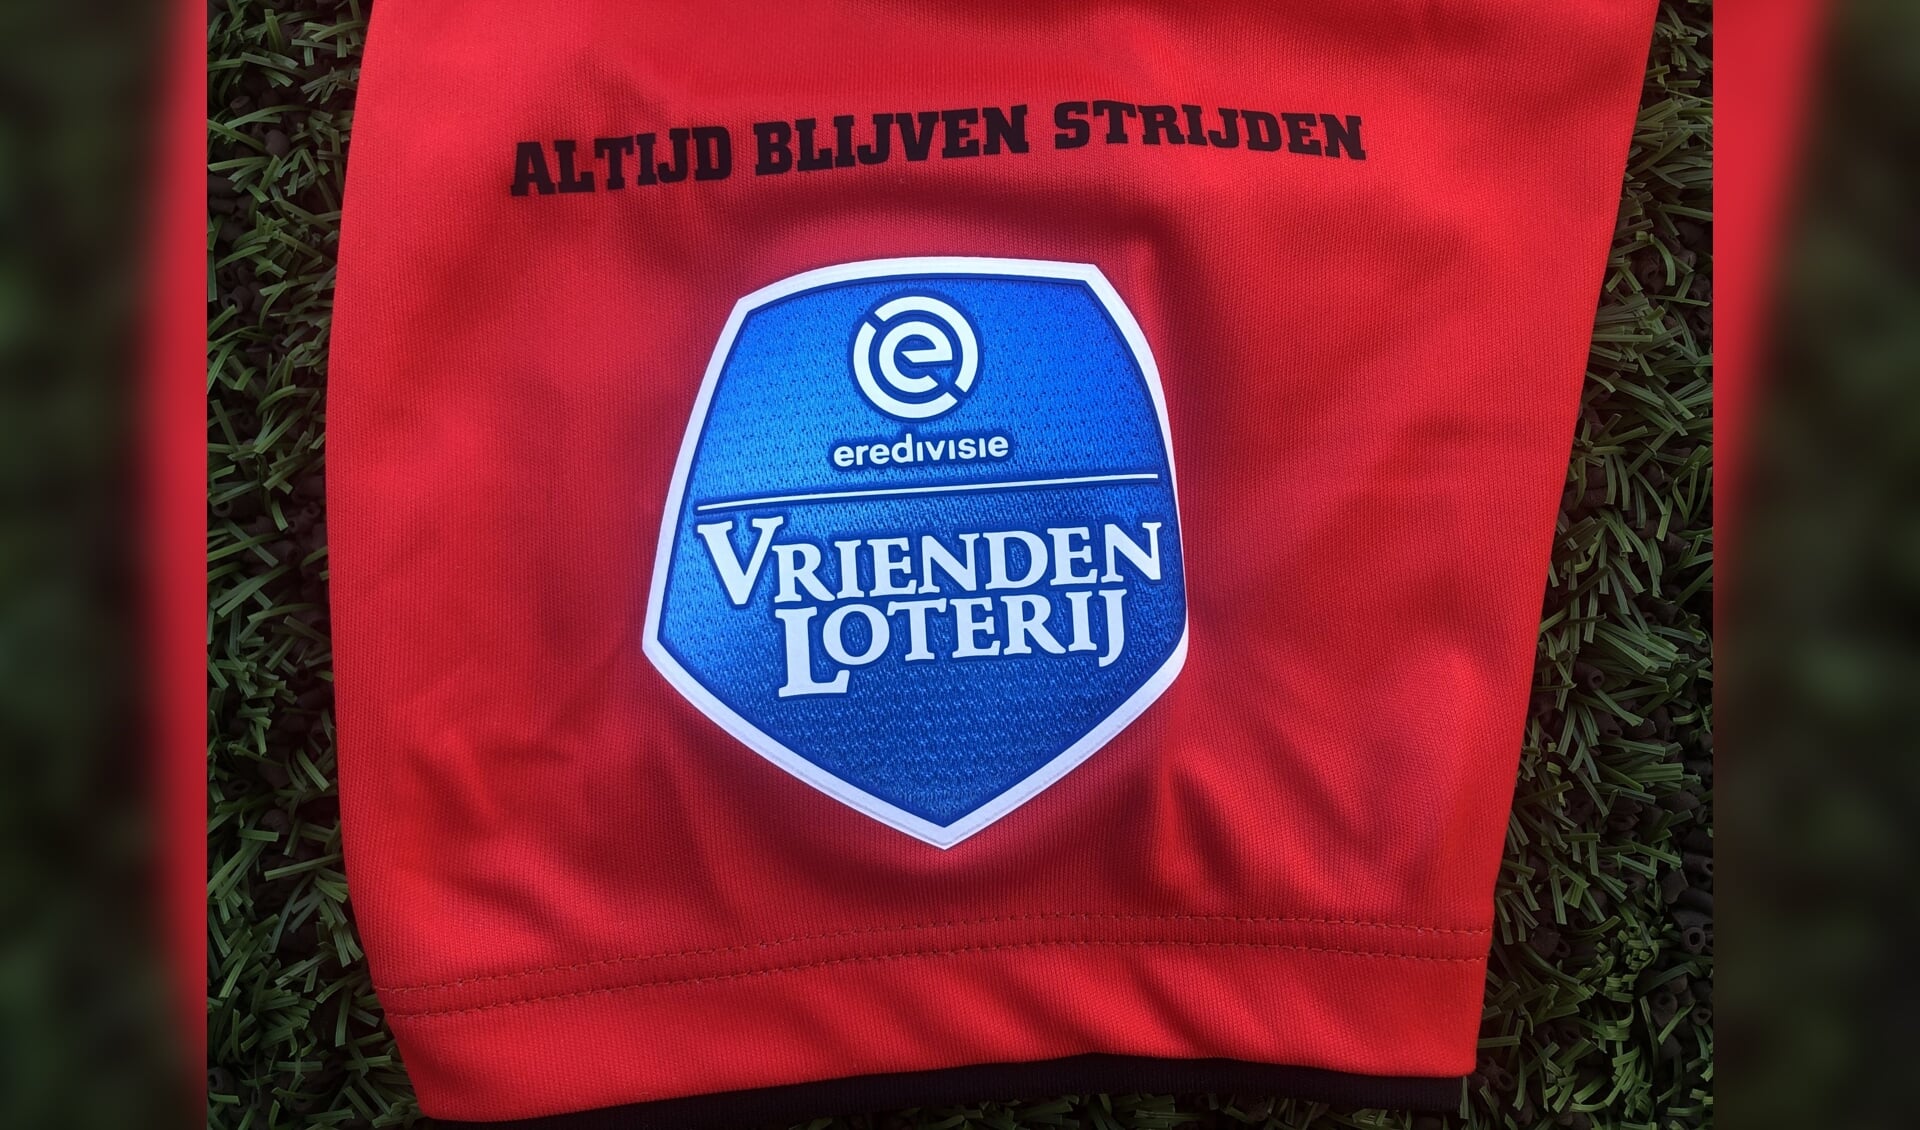 Altijd blijven strijden, is sinds vorige week op de shirts van FC Emmen te lezen. En dat zal ook moeten, wil men ook volgend jaar in de Eredivisie spelen. Foto: FC Emmen.